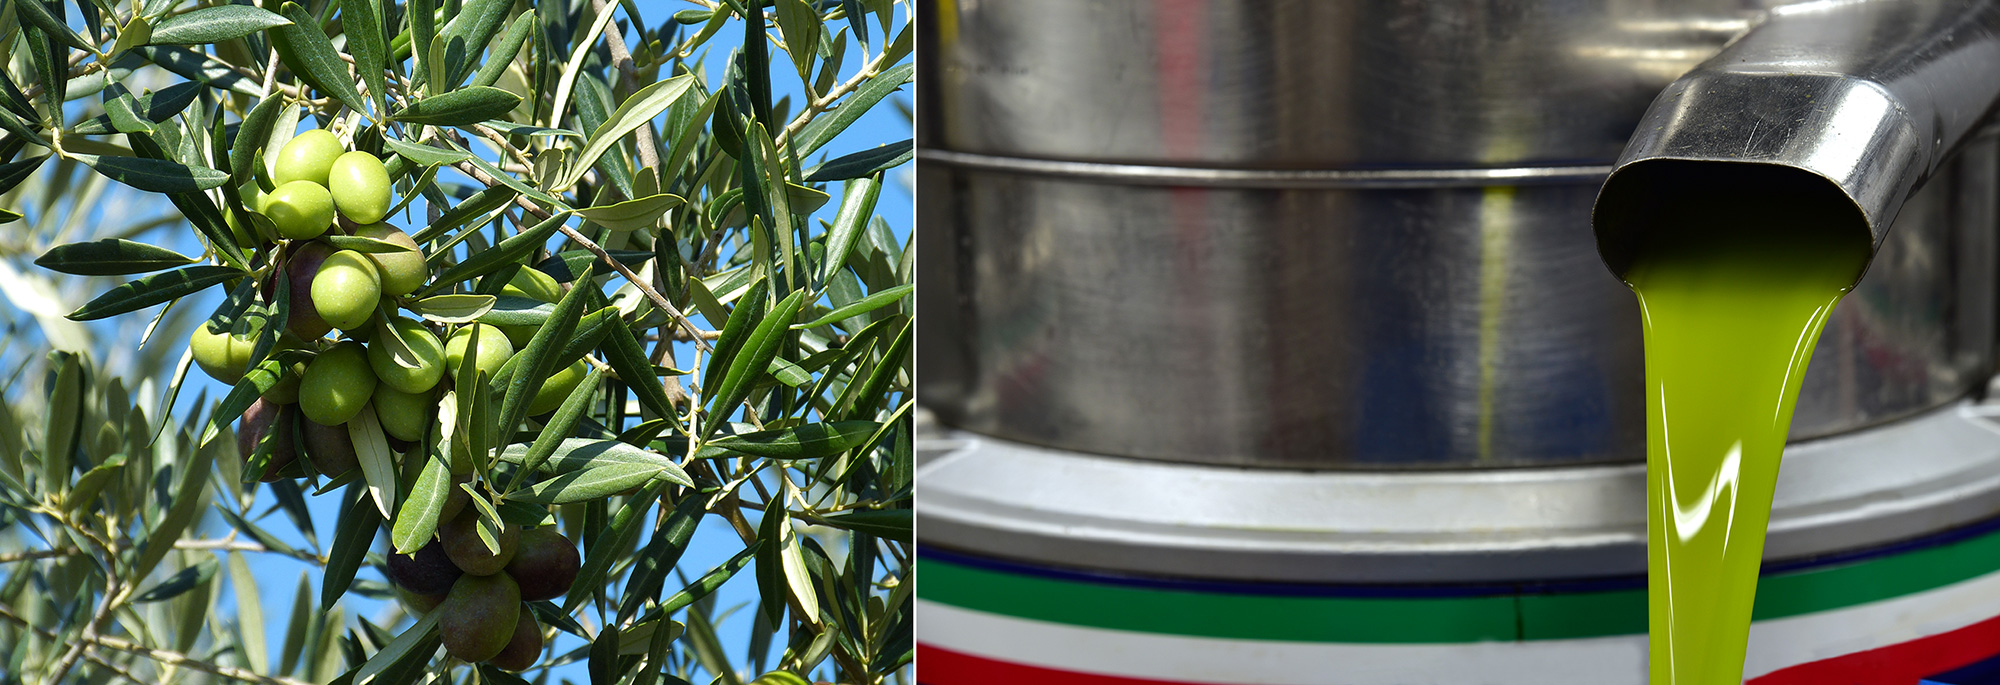 Concime per olivo: come ridurre la cascola ed aumentare le rese